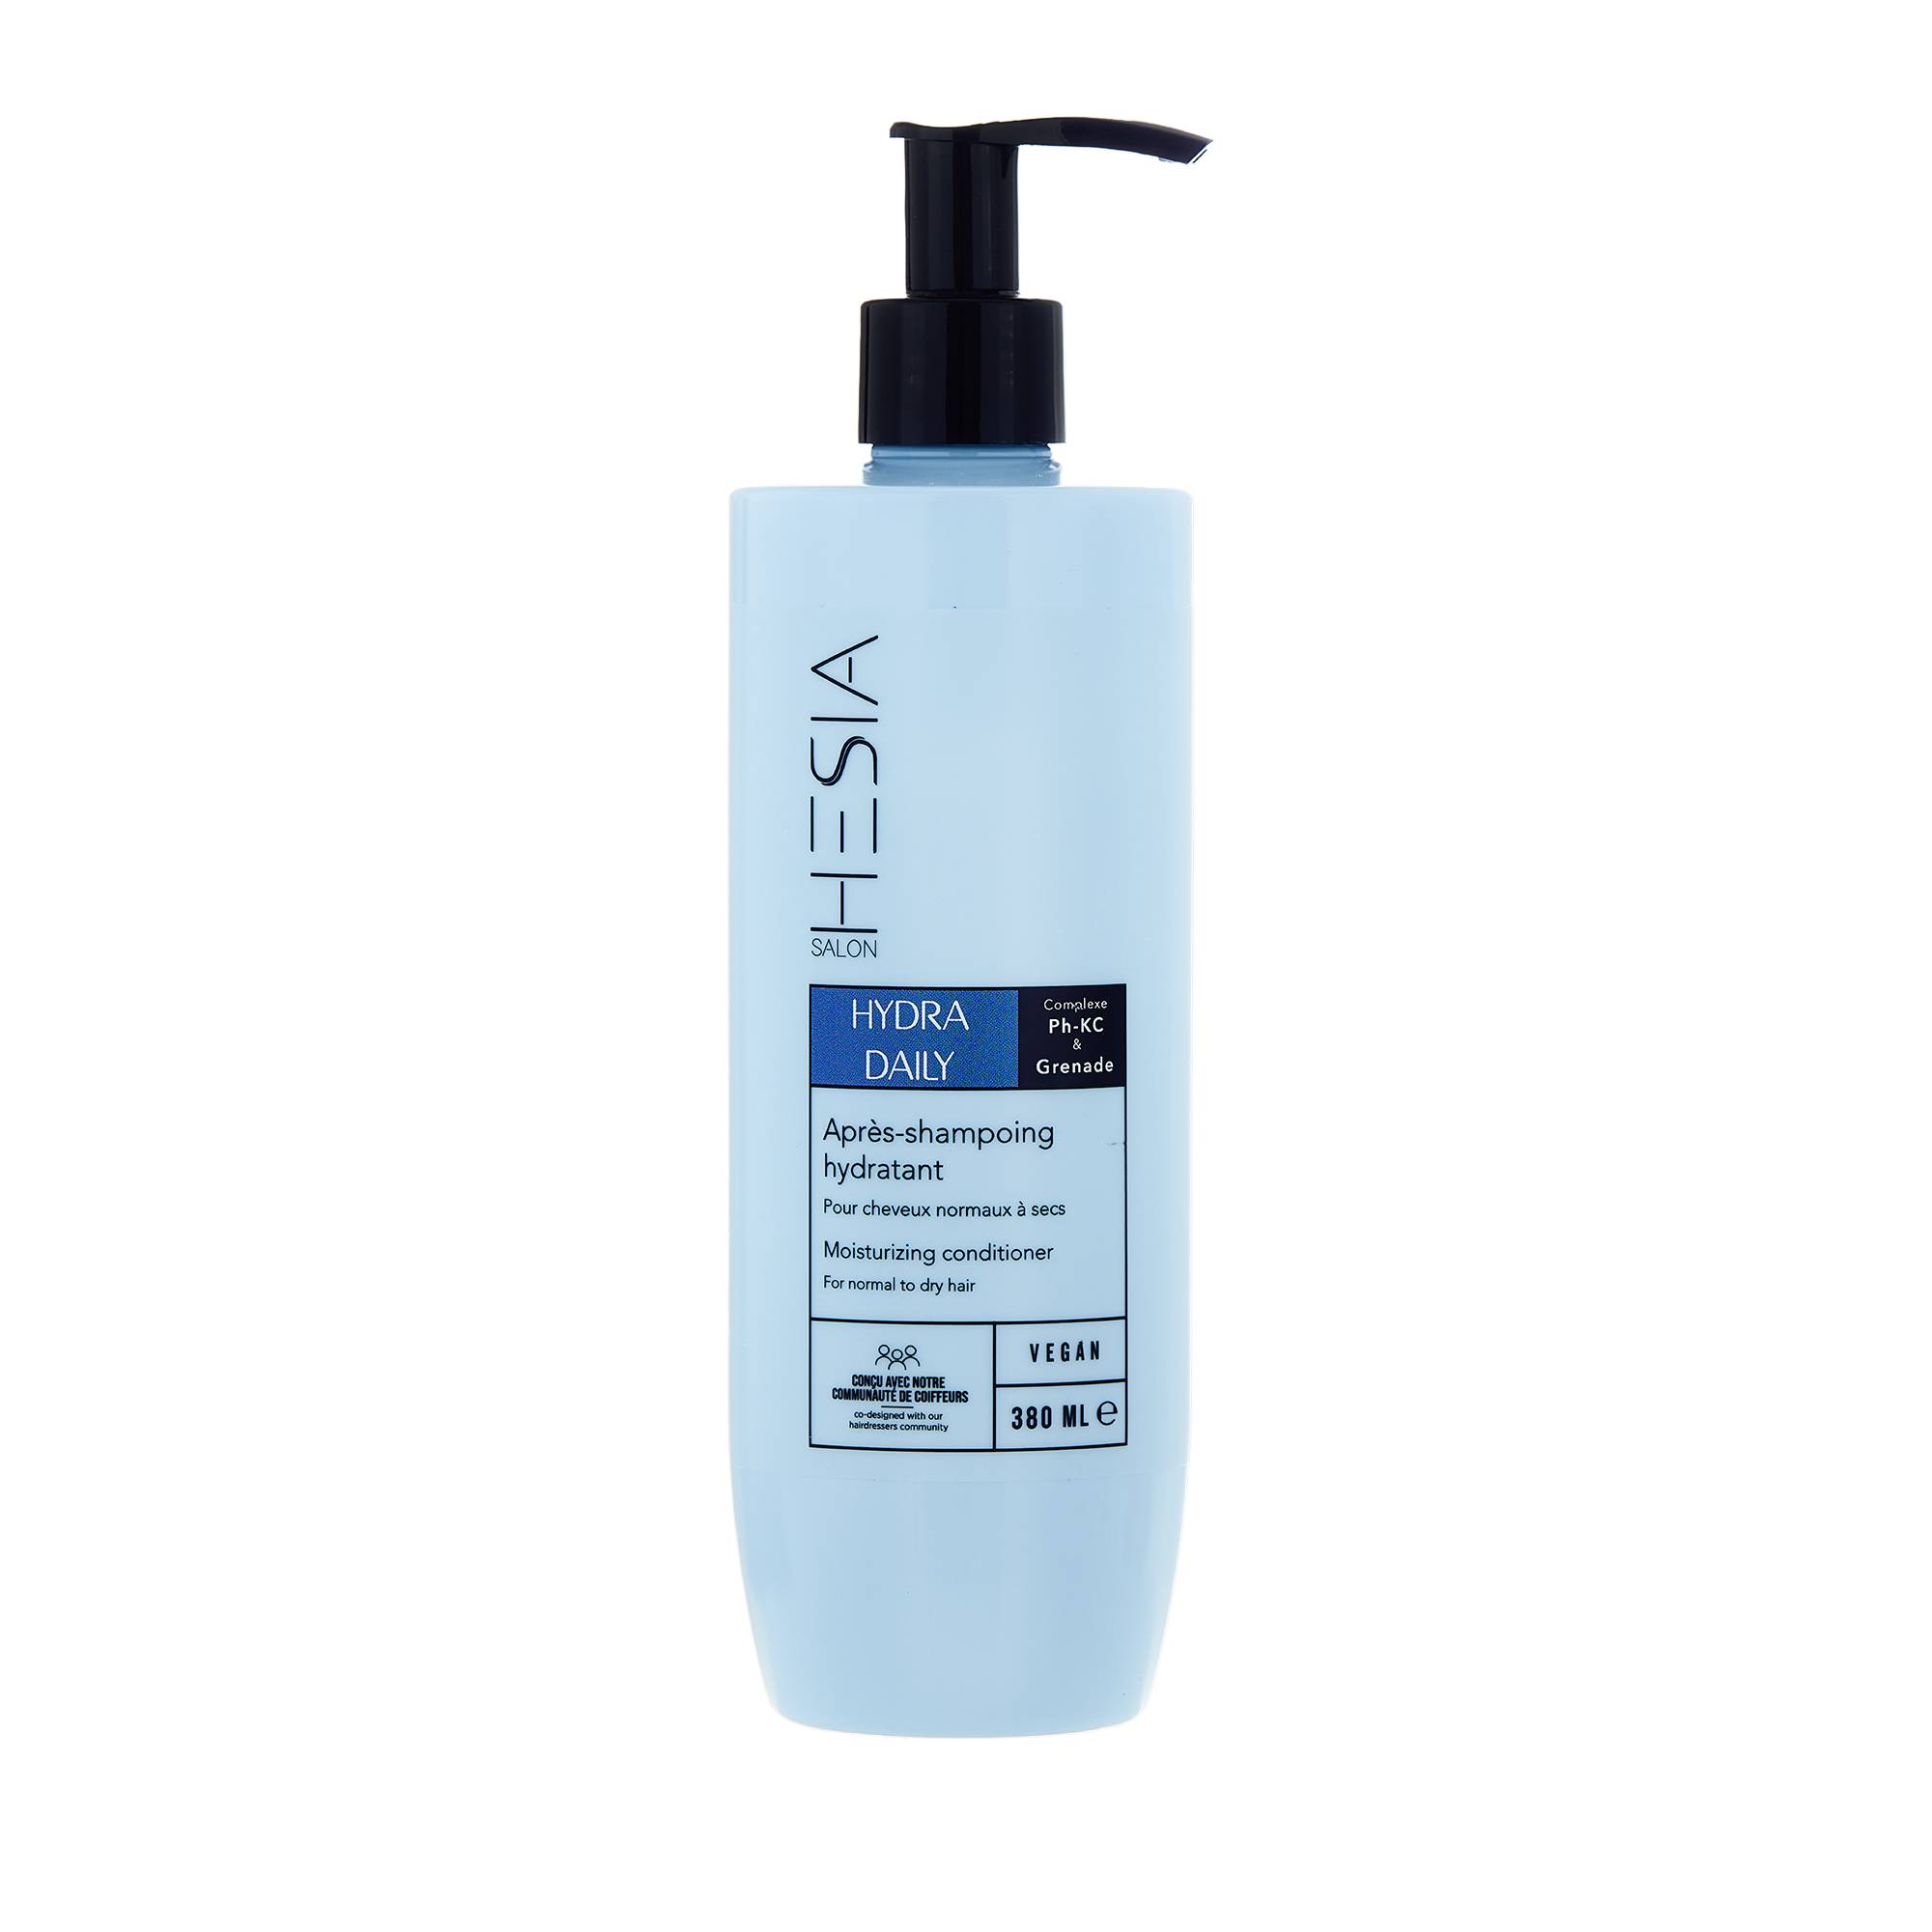 Après-shampoing hydratant Hydra Daily de la marque HESIA Salon Contenance 380ml - 1